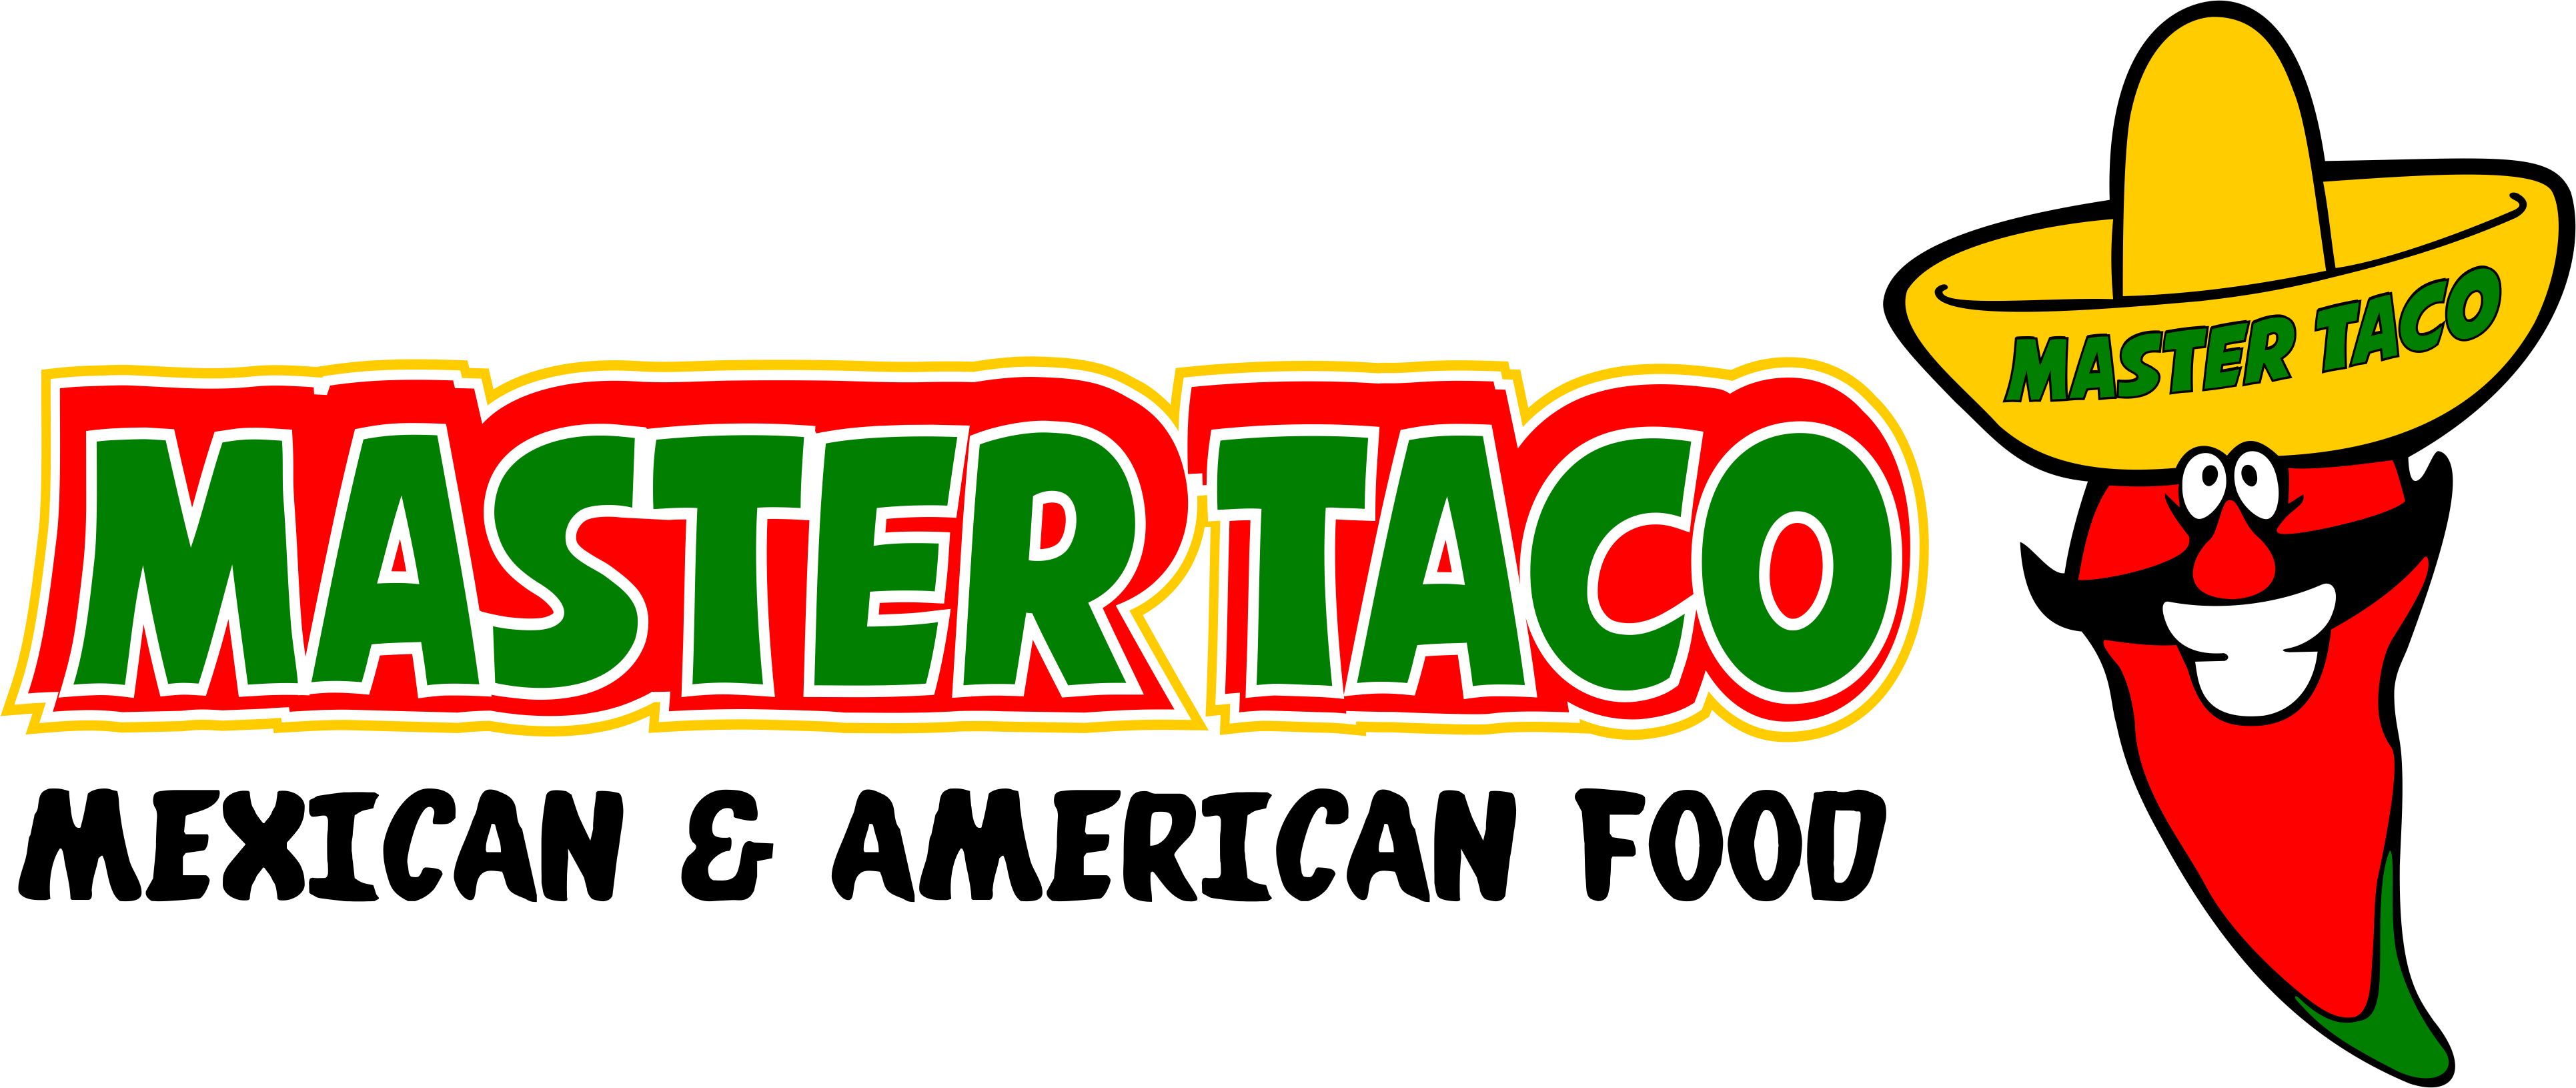 image of Master Taco logo